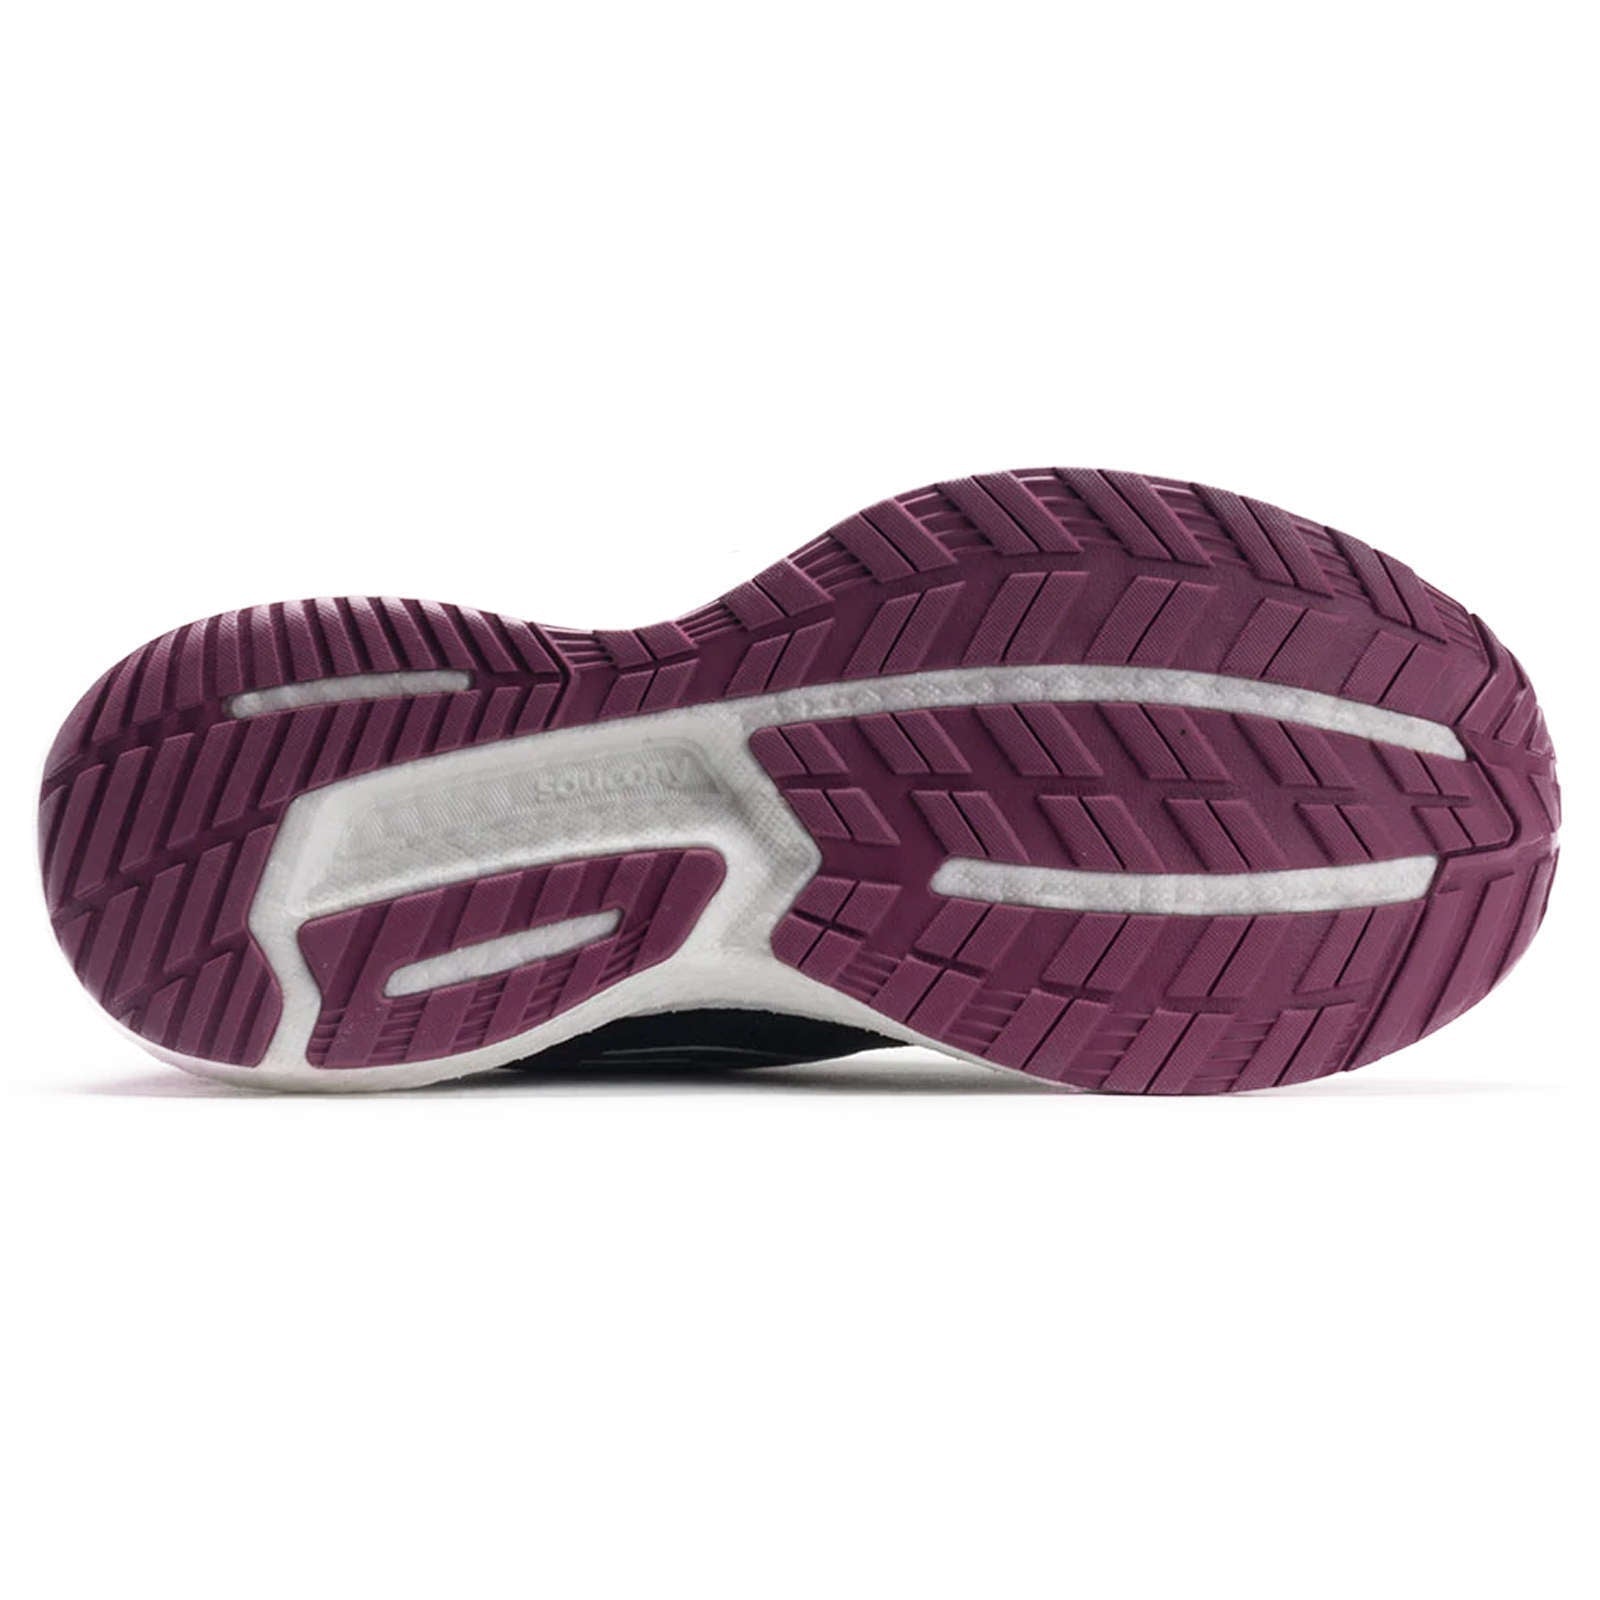 Saucony Triumph 19 Synthetic Textile Women's Low-Top Sneakers#color_shadow quartz